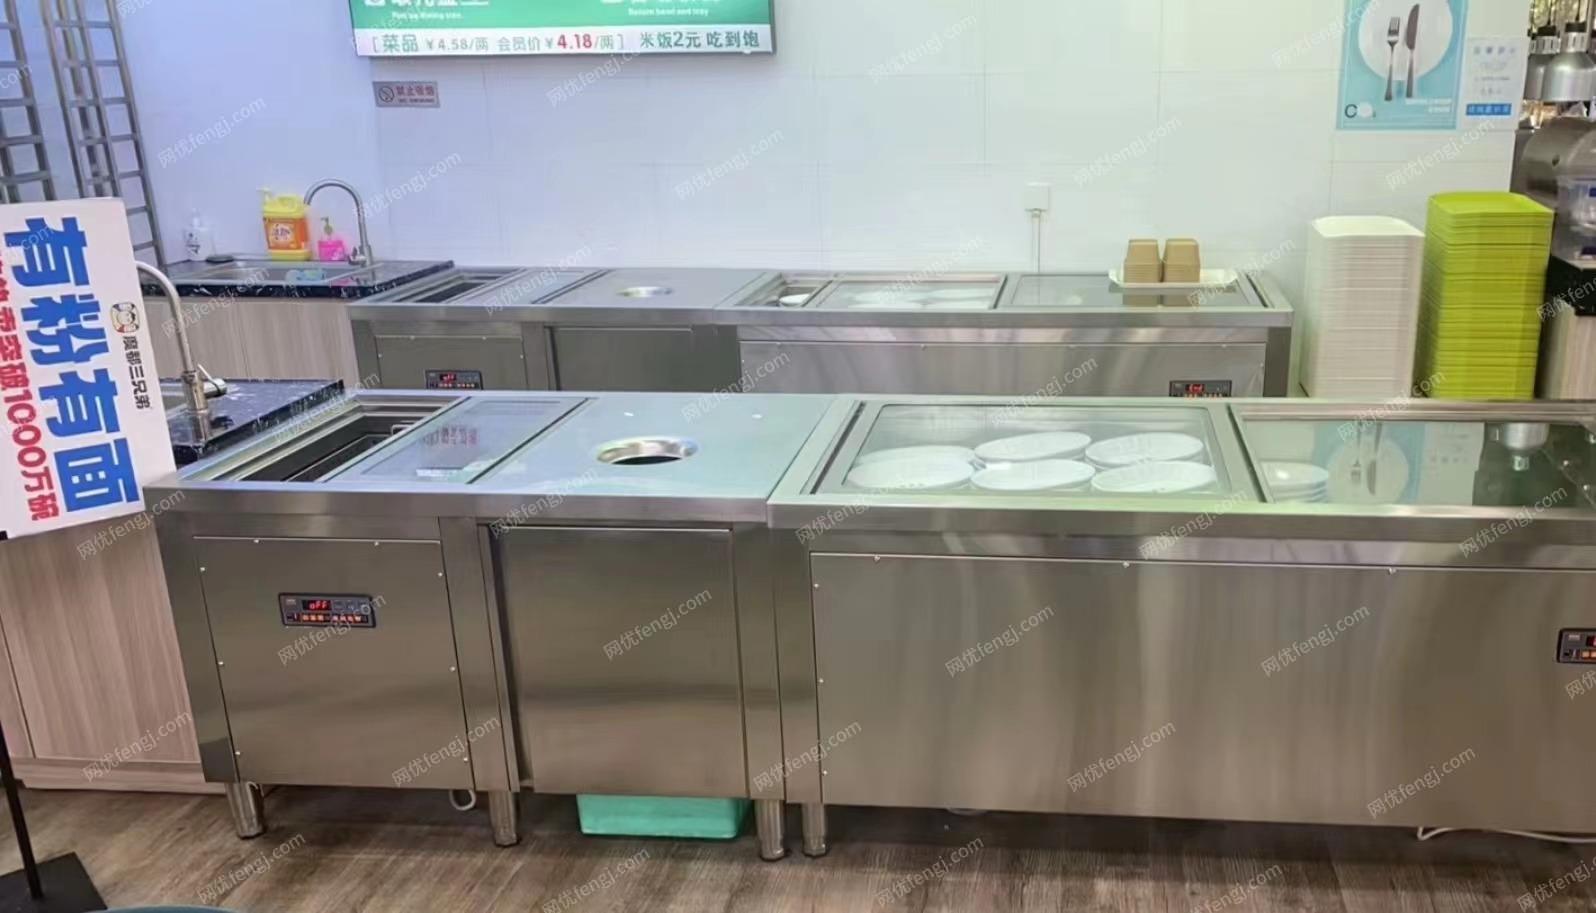 上海地区餐饮关闭转近全新油烟机、双开门冰箱、操作台冰箱、200座桌椅、热水器、空调16匹等等